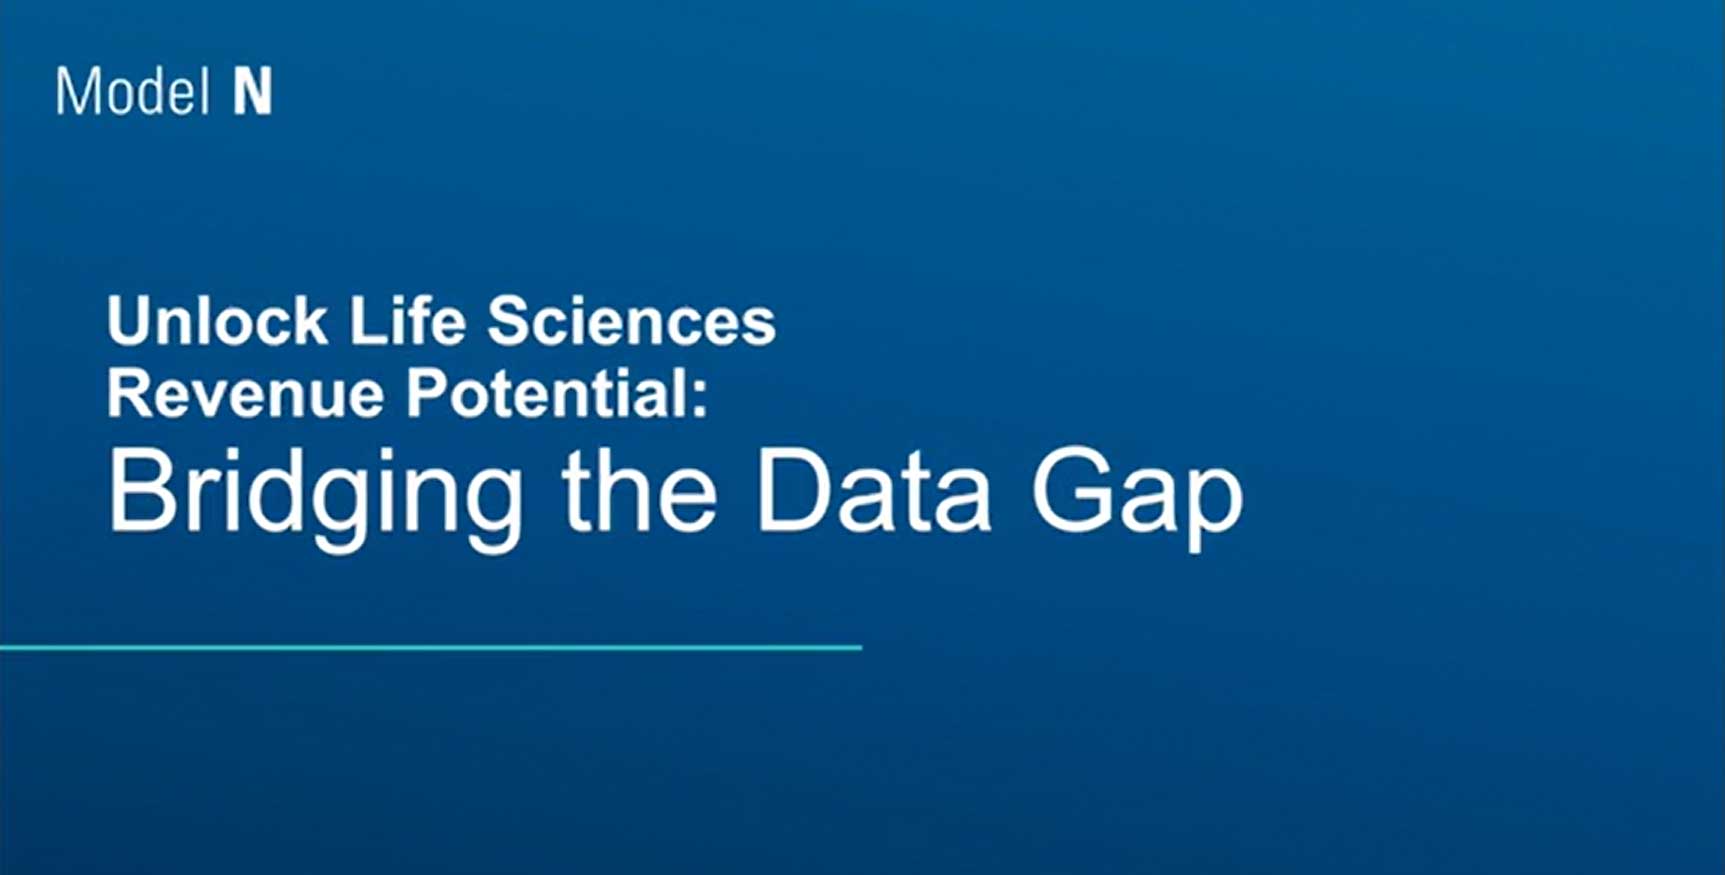 bridging-the-data-gap-thumb